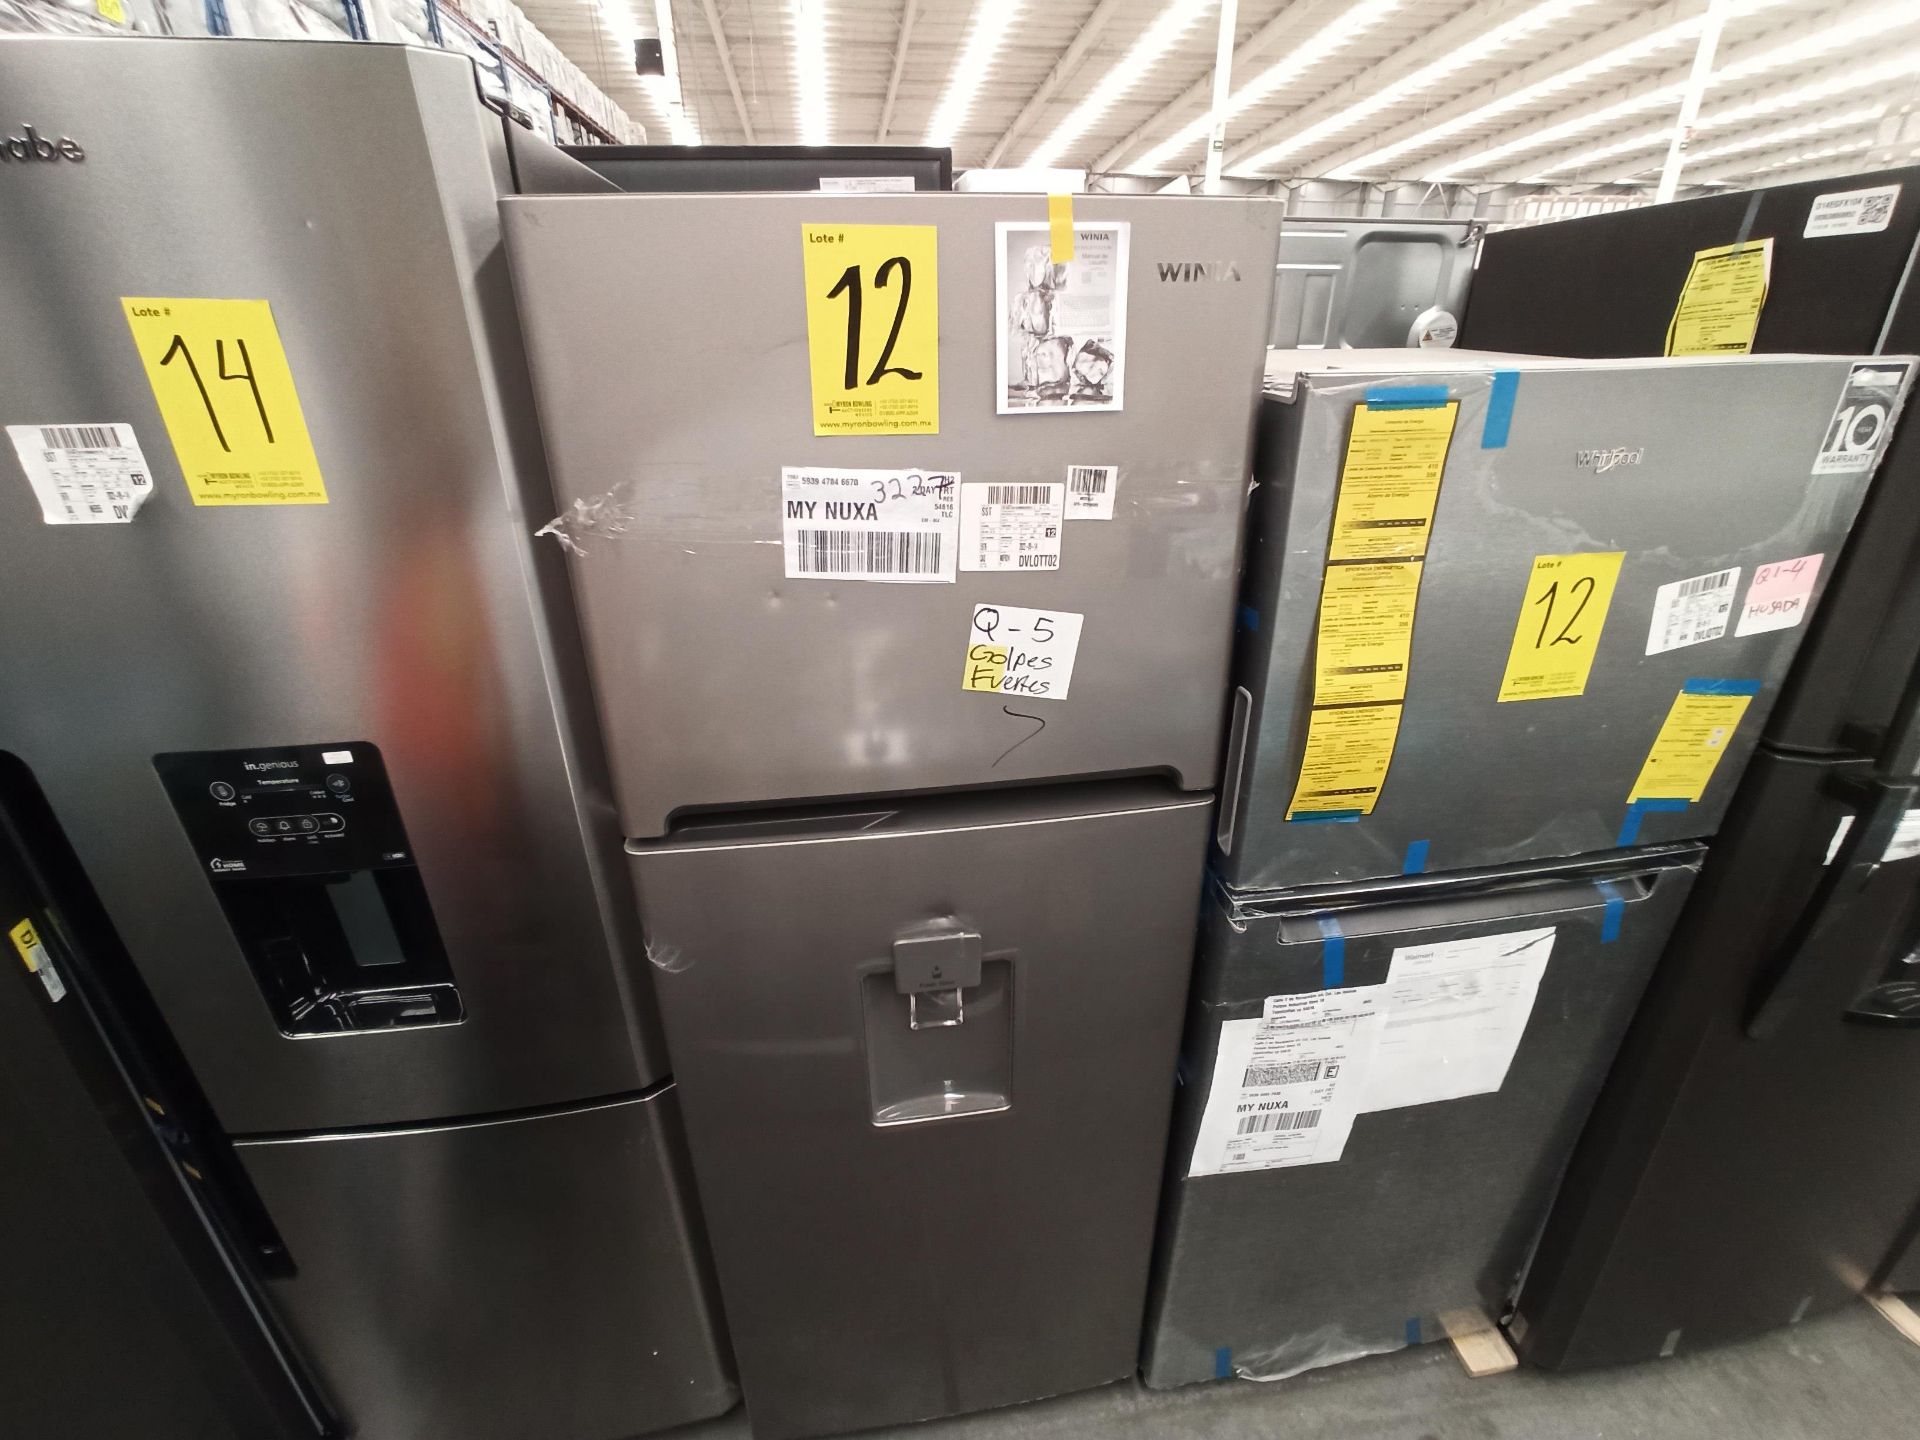 Lote de 2 refrigeradores contiene: 1 Refrigerador Marca WHIRLPOOL, Modelo WT1230K, Serie VSB3739992 - Image 10 of 18